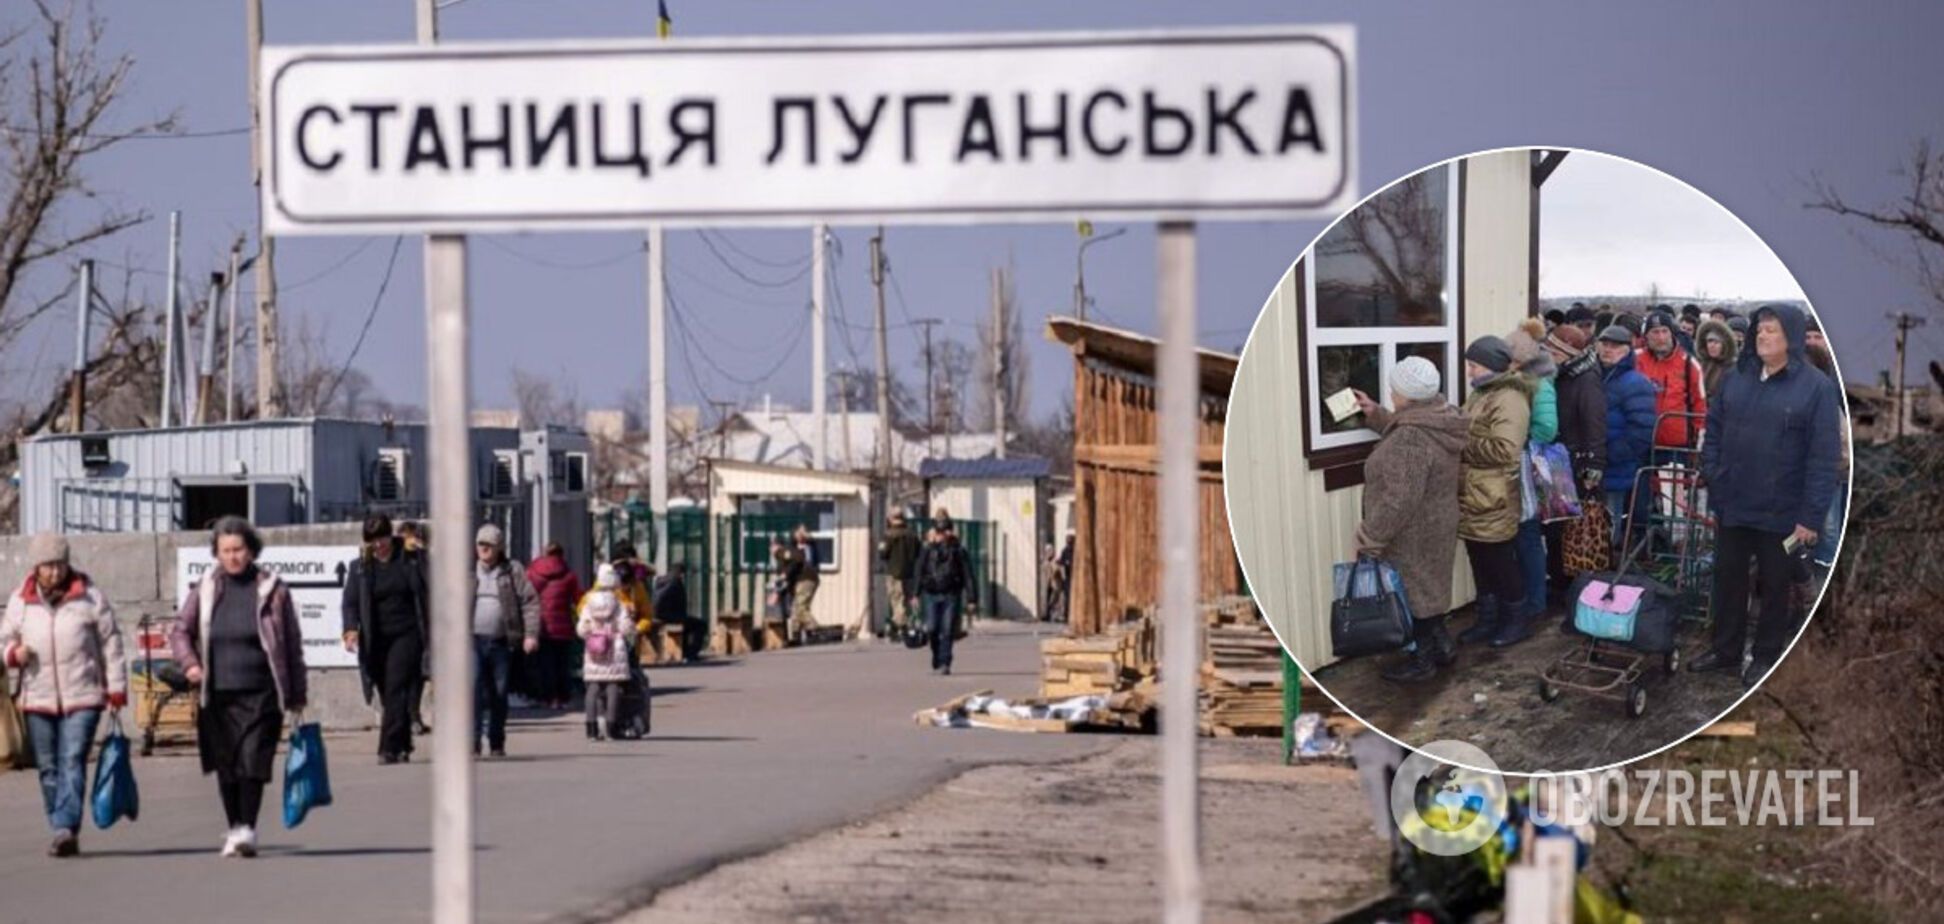 Офіцер ЗСУ попередив про підготовку Росією провокації у Станиці Луганській